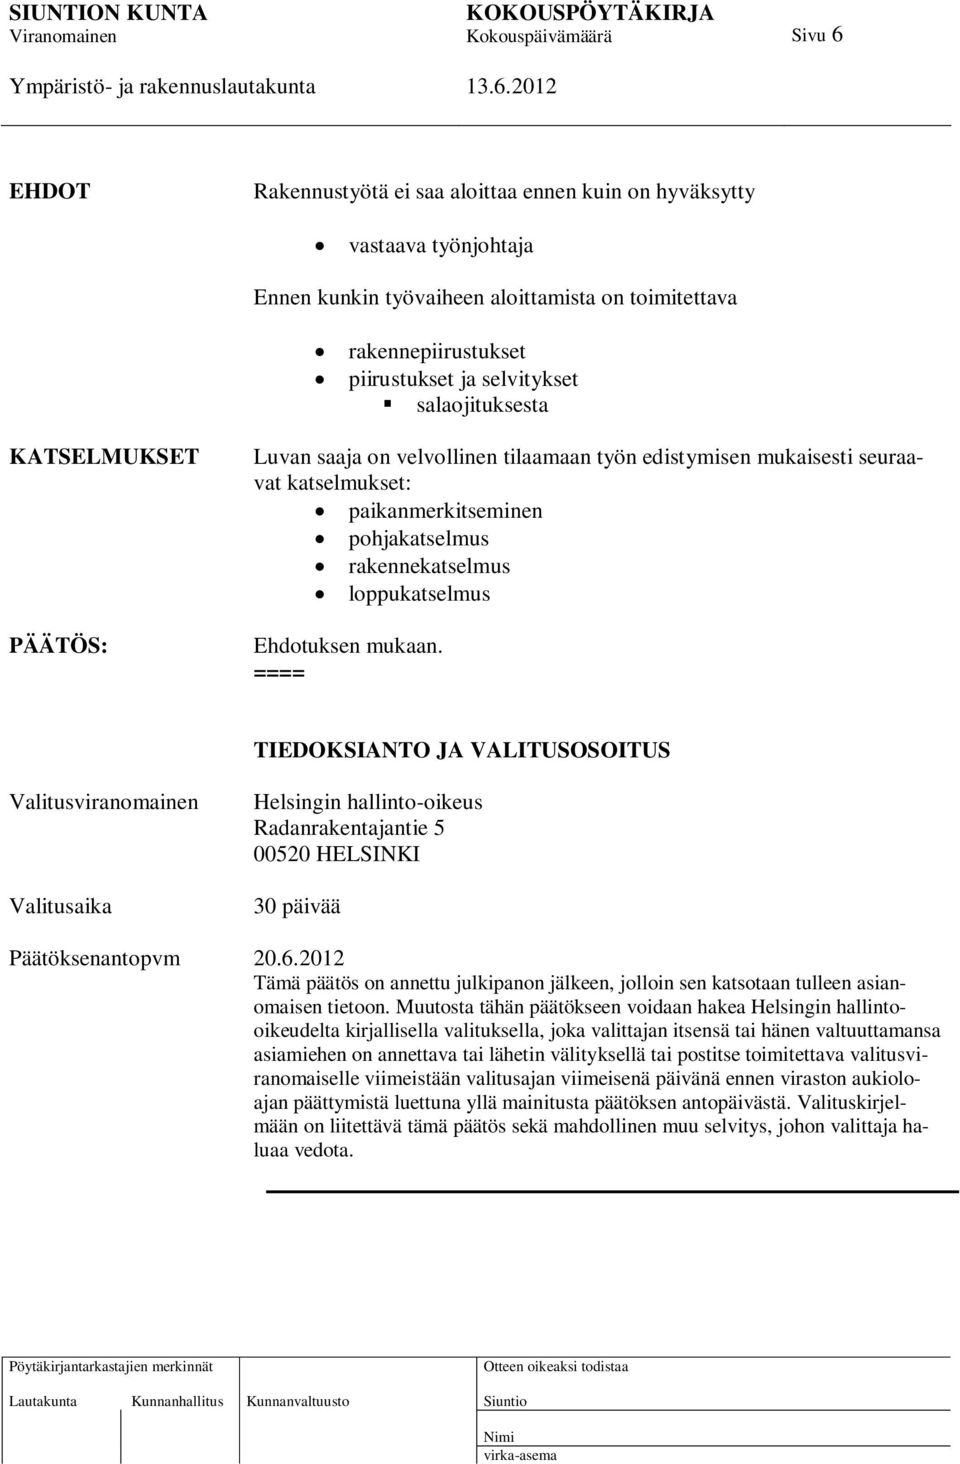 Ehdotuksen mukaan. ==== TIEDOKSIANTO JA VALITUSOSOITUS Valitusviranomainen Valitusaika Helsingin hallinto-oikeus Radanrakentajantie 5 00520 HELSINKI 30 päivää Päätöksenantopvm 20.6.